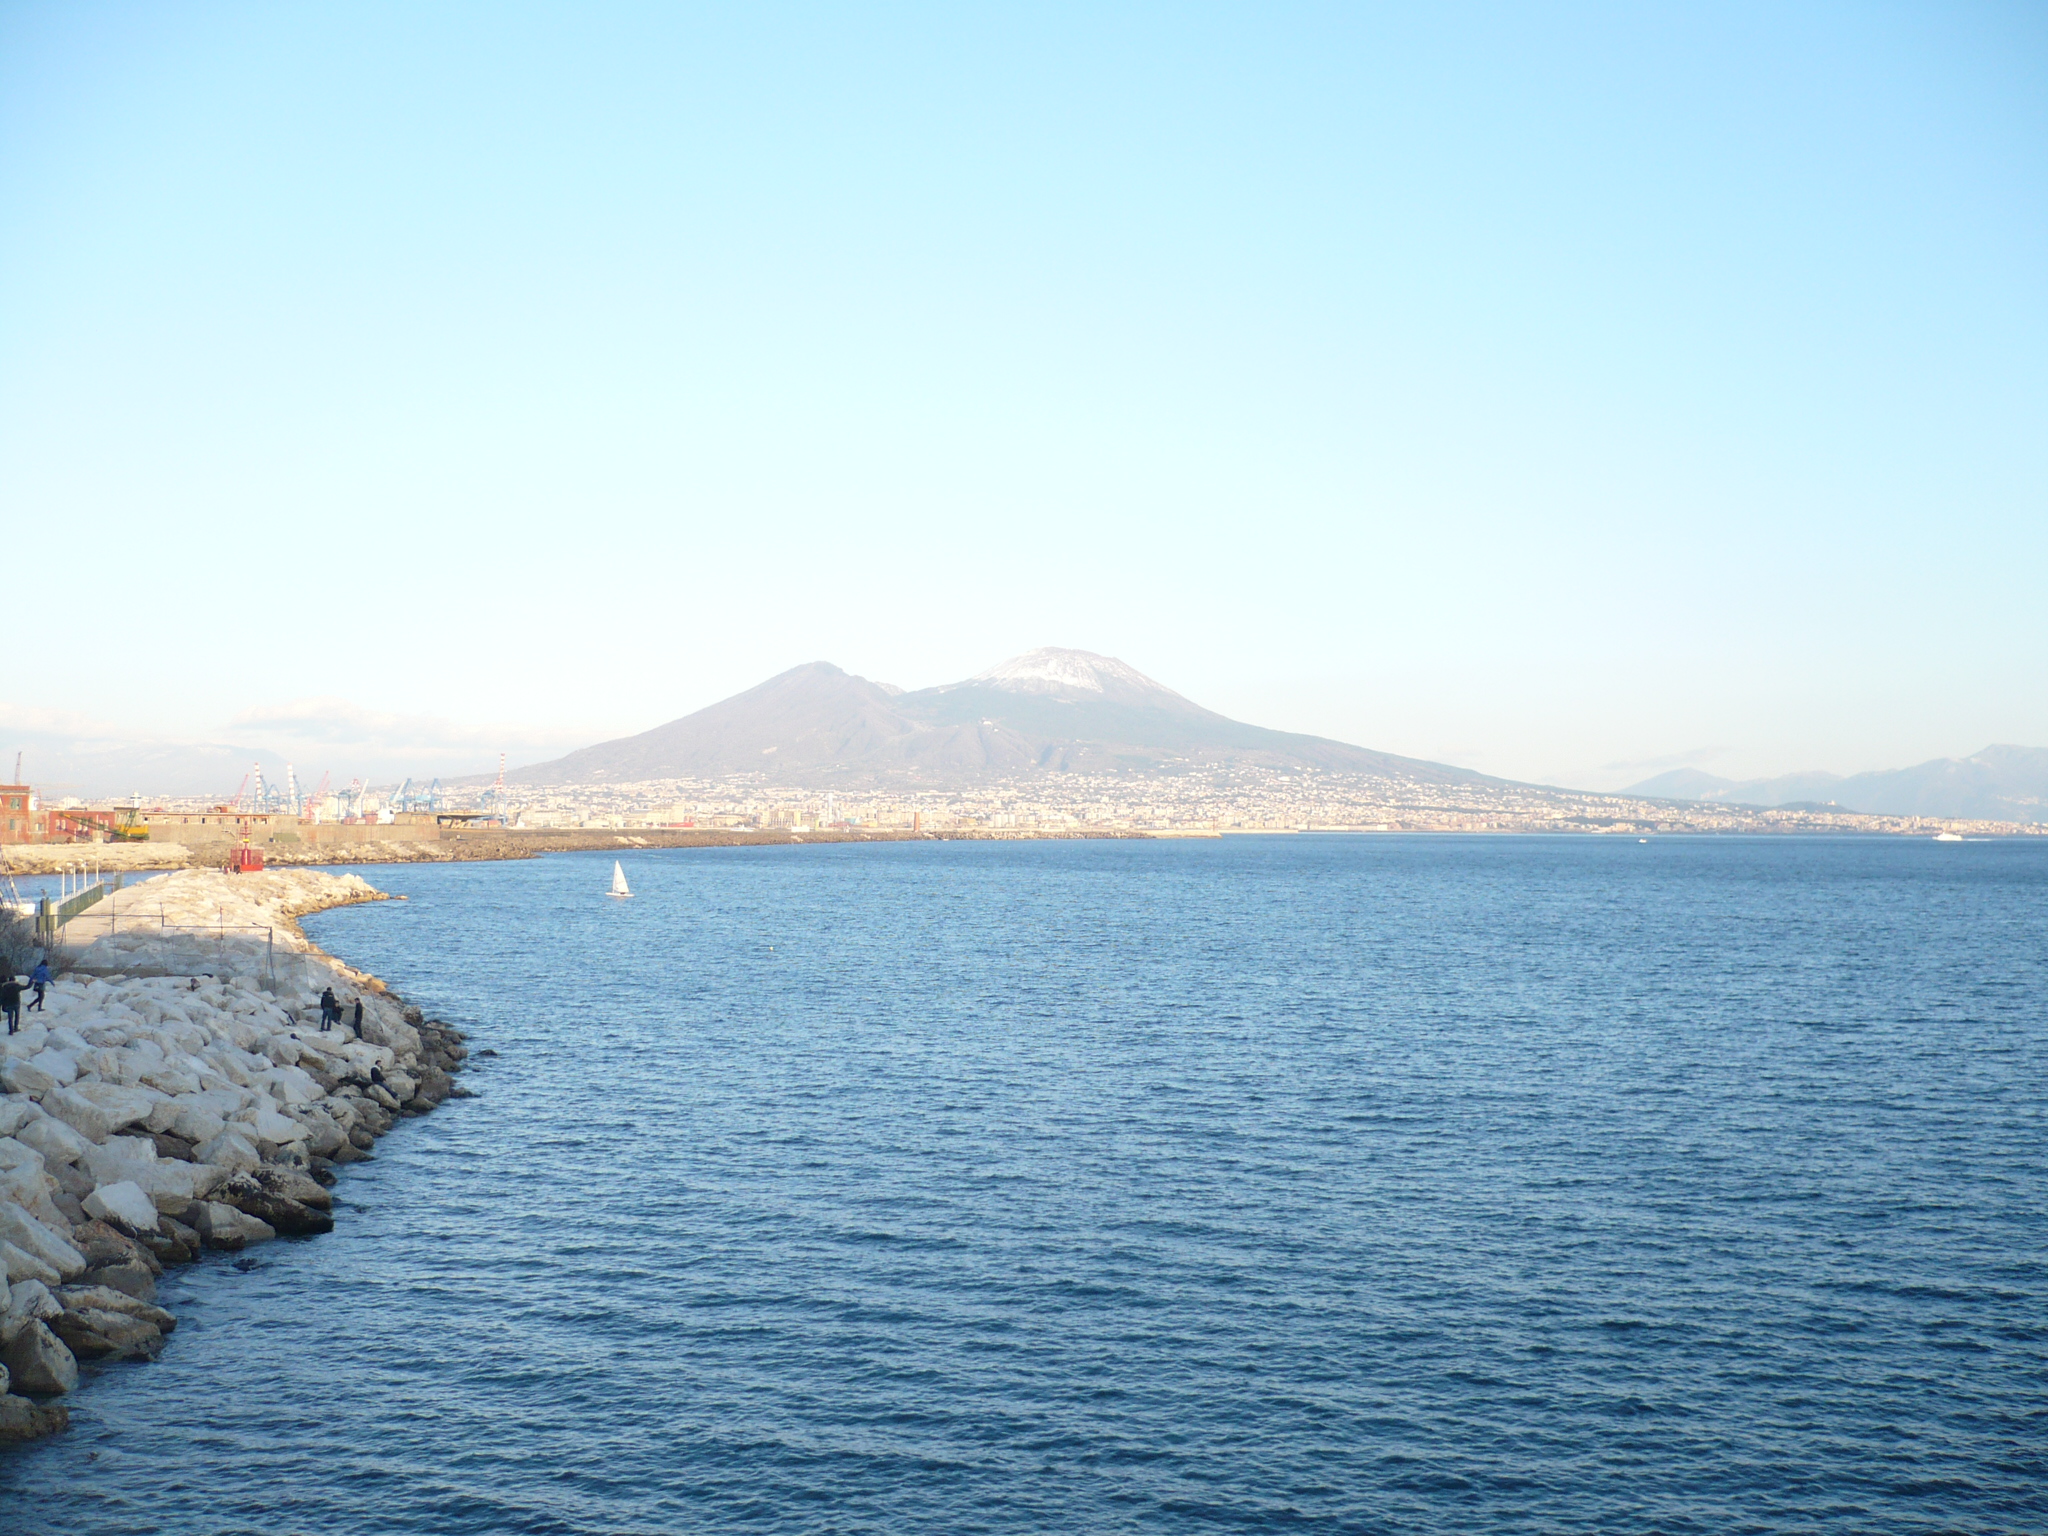 Vesuvio - Napoli